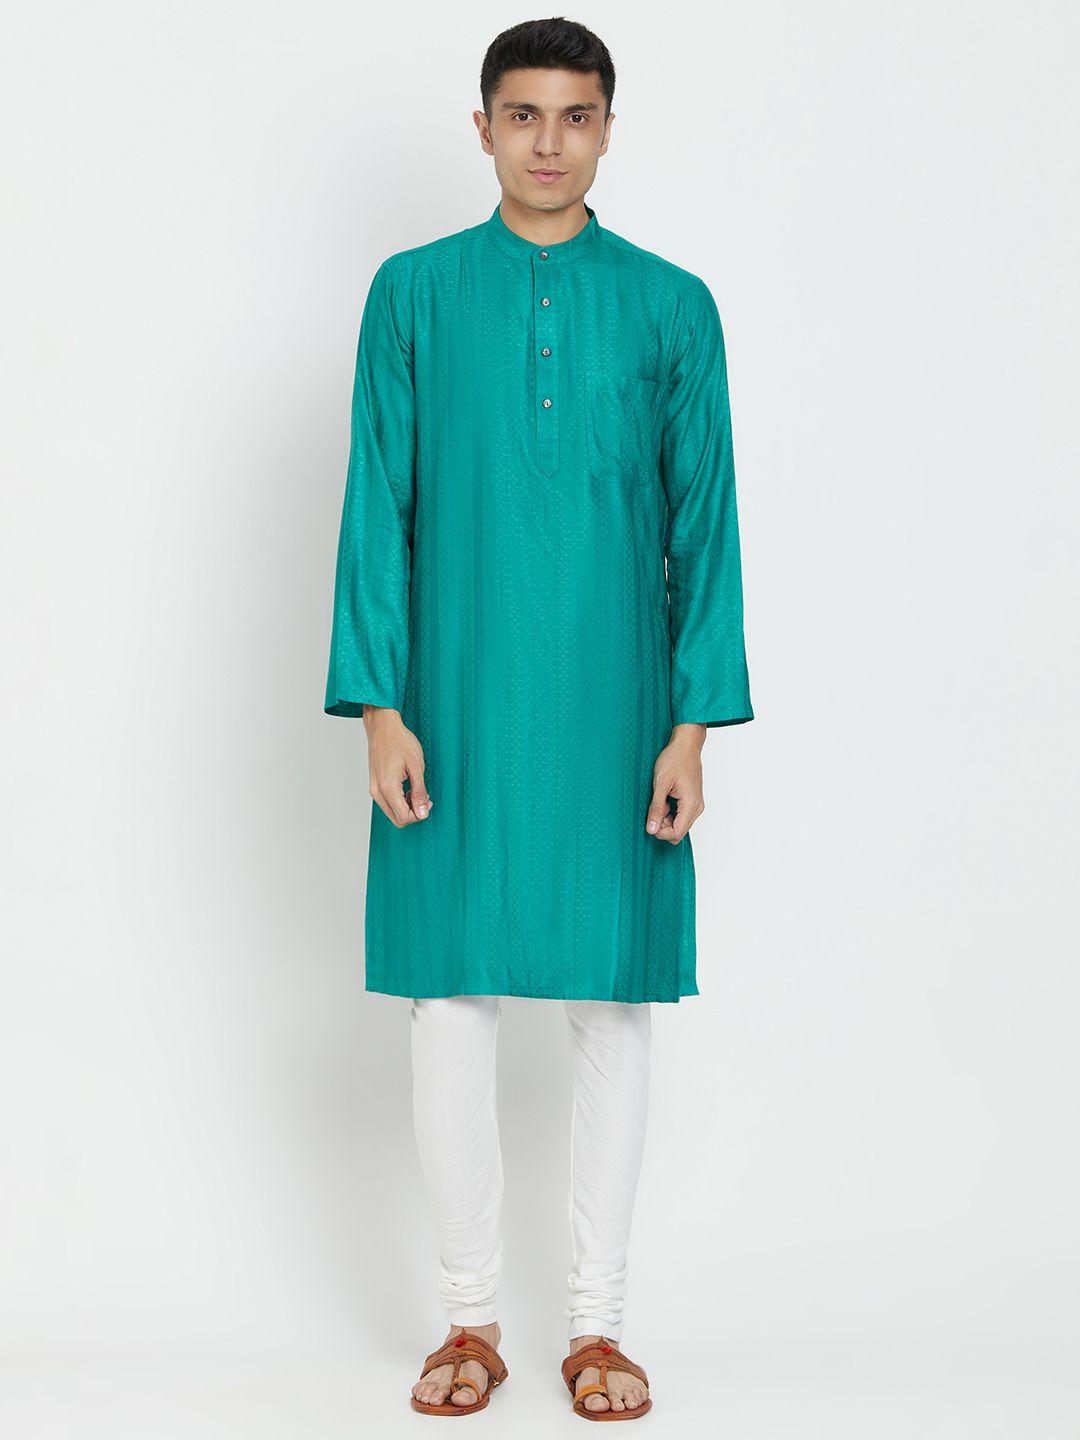 fabindia men turquoise blue woven design straight kurta